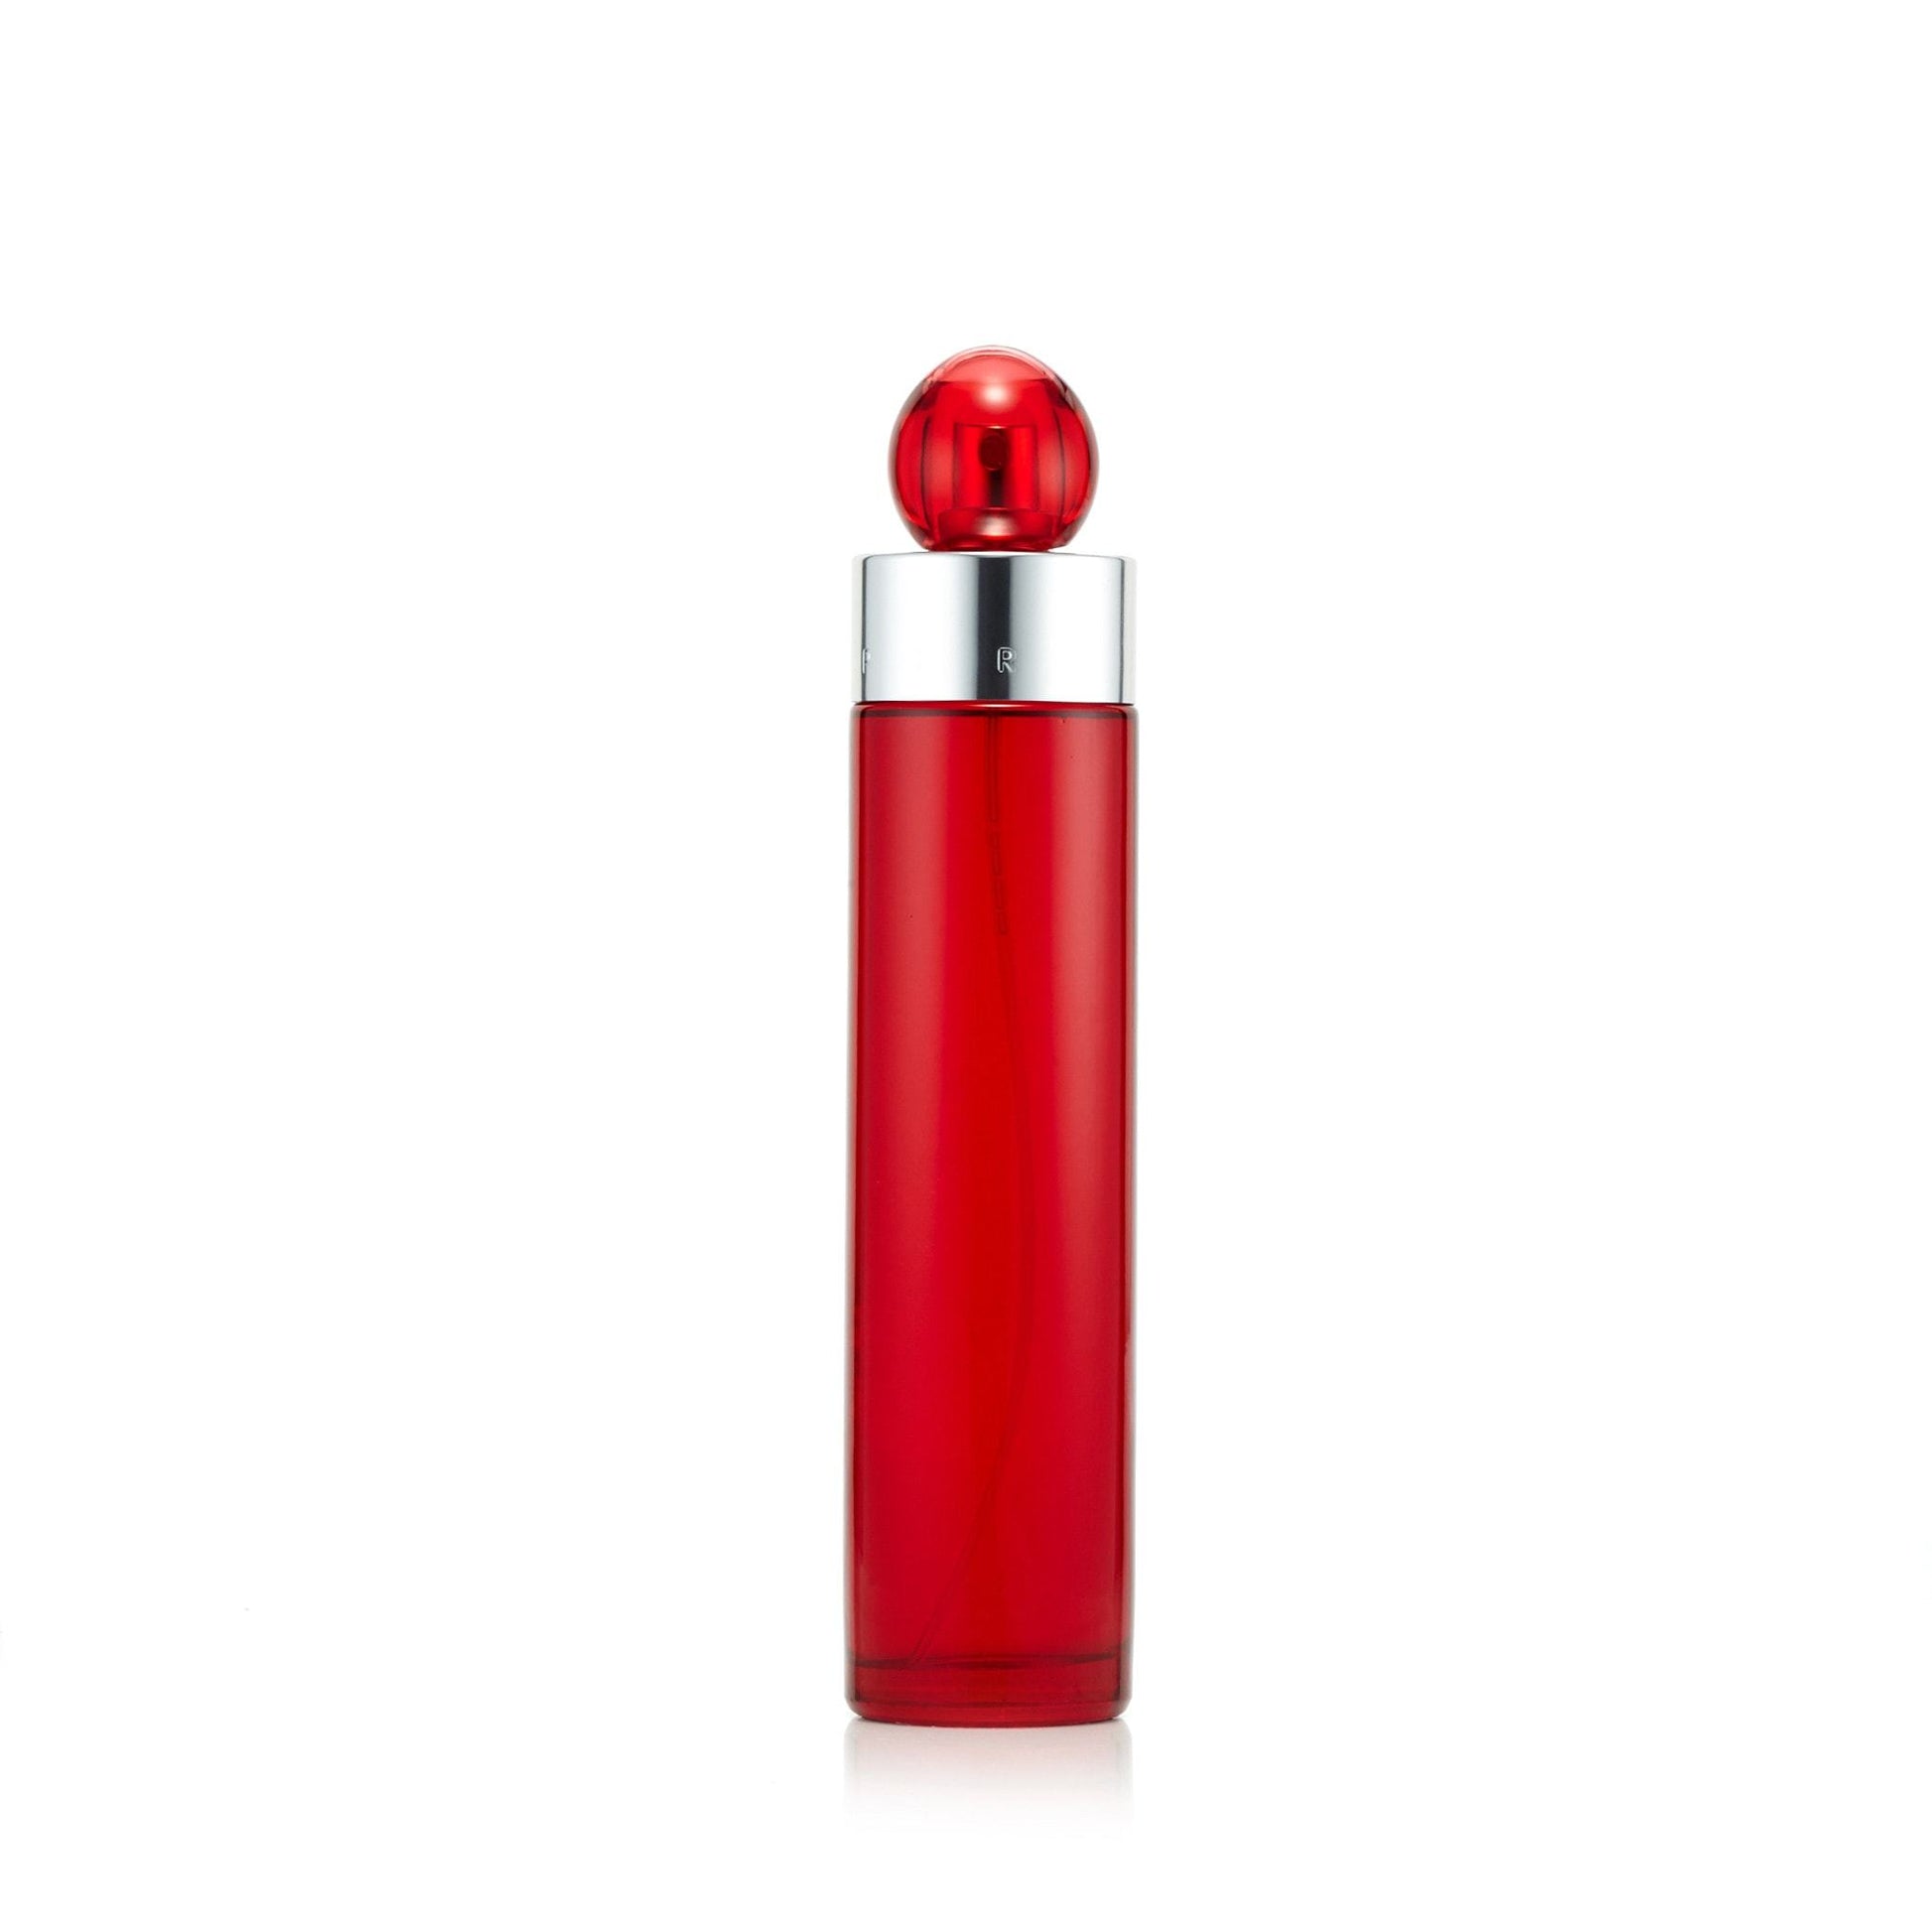 360° Red Eau de Toilette Spray for Men by Perry Ellis, Product image 2